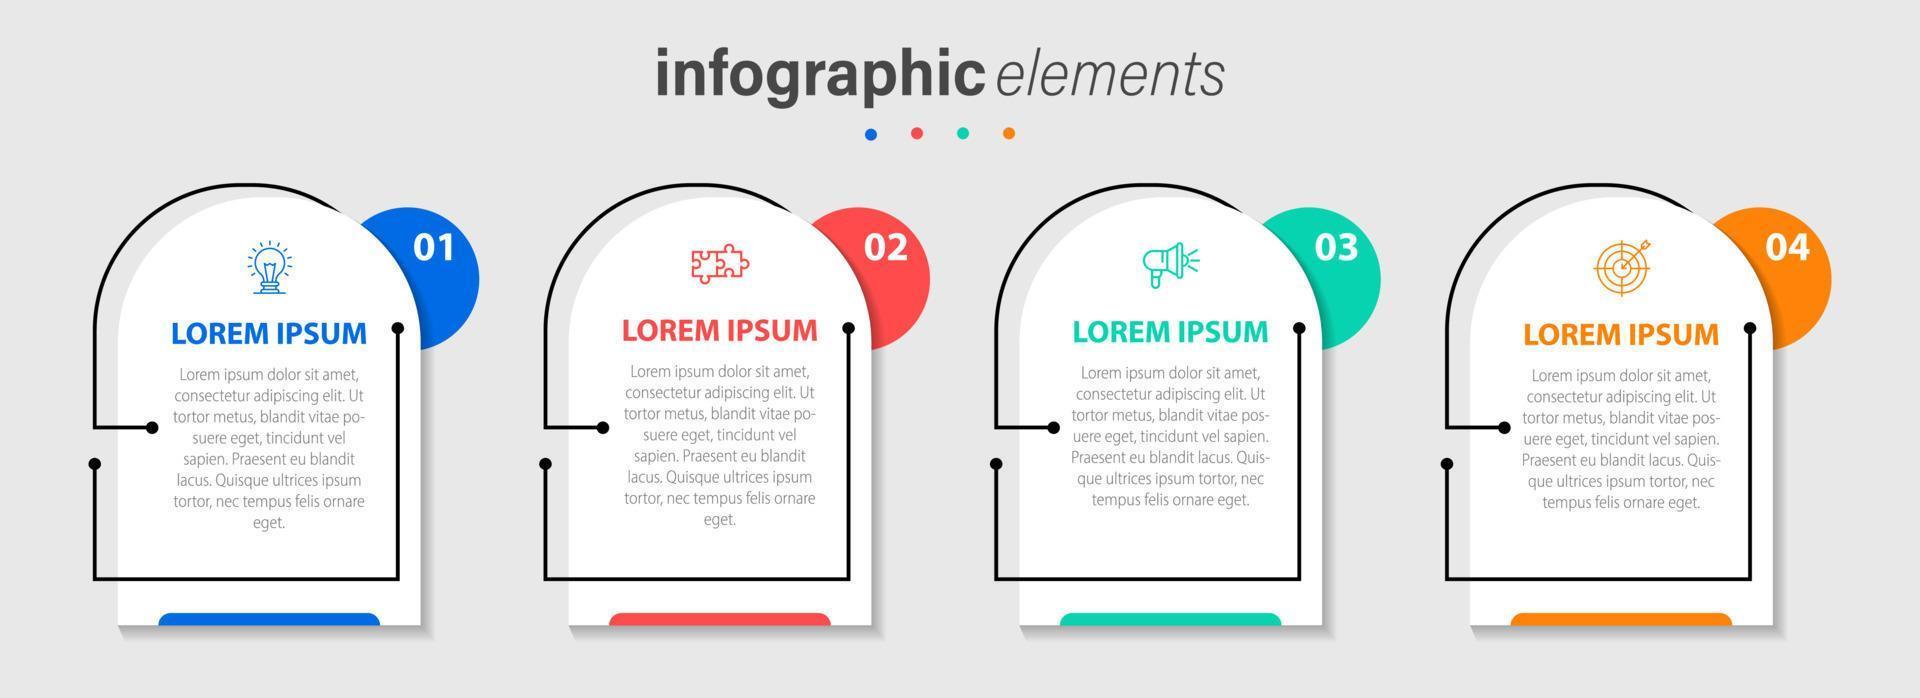 negocio infografía elementos modelo diseño con íconos y 4 4 opciones o pasos. vector ilustración.